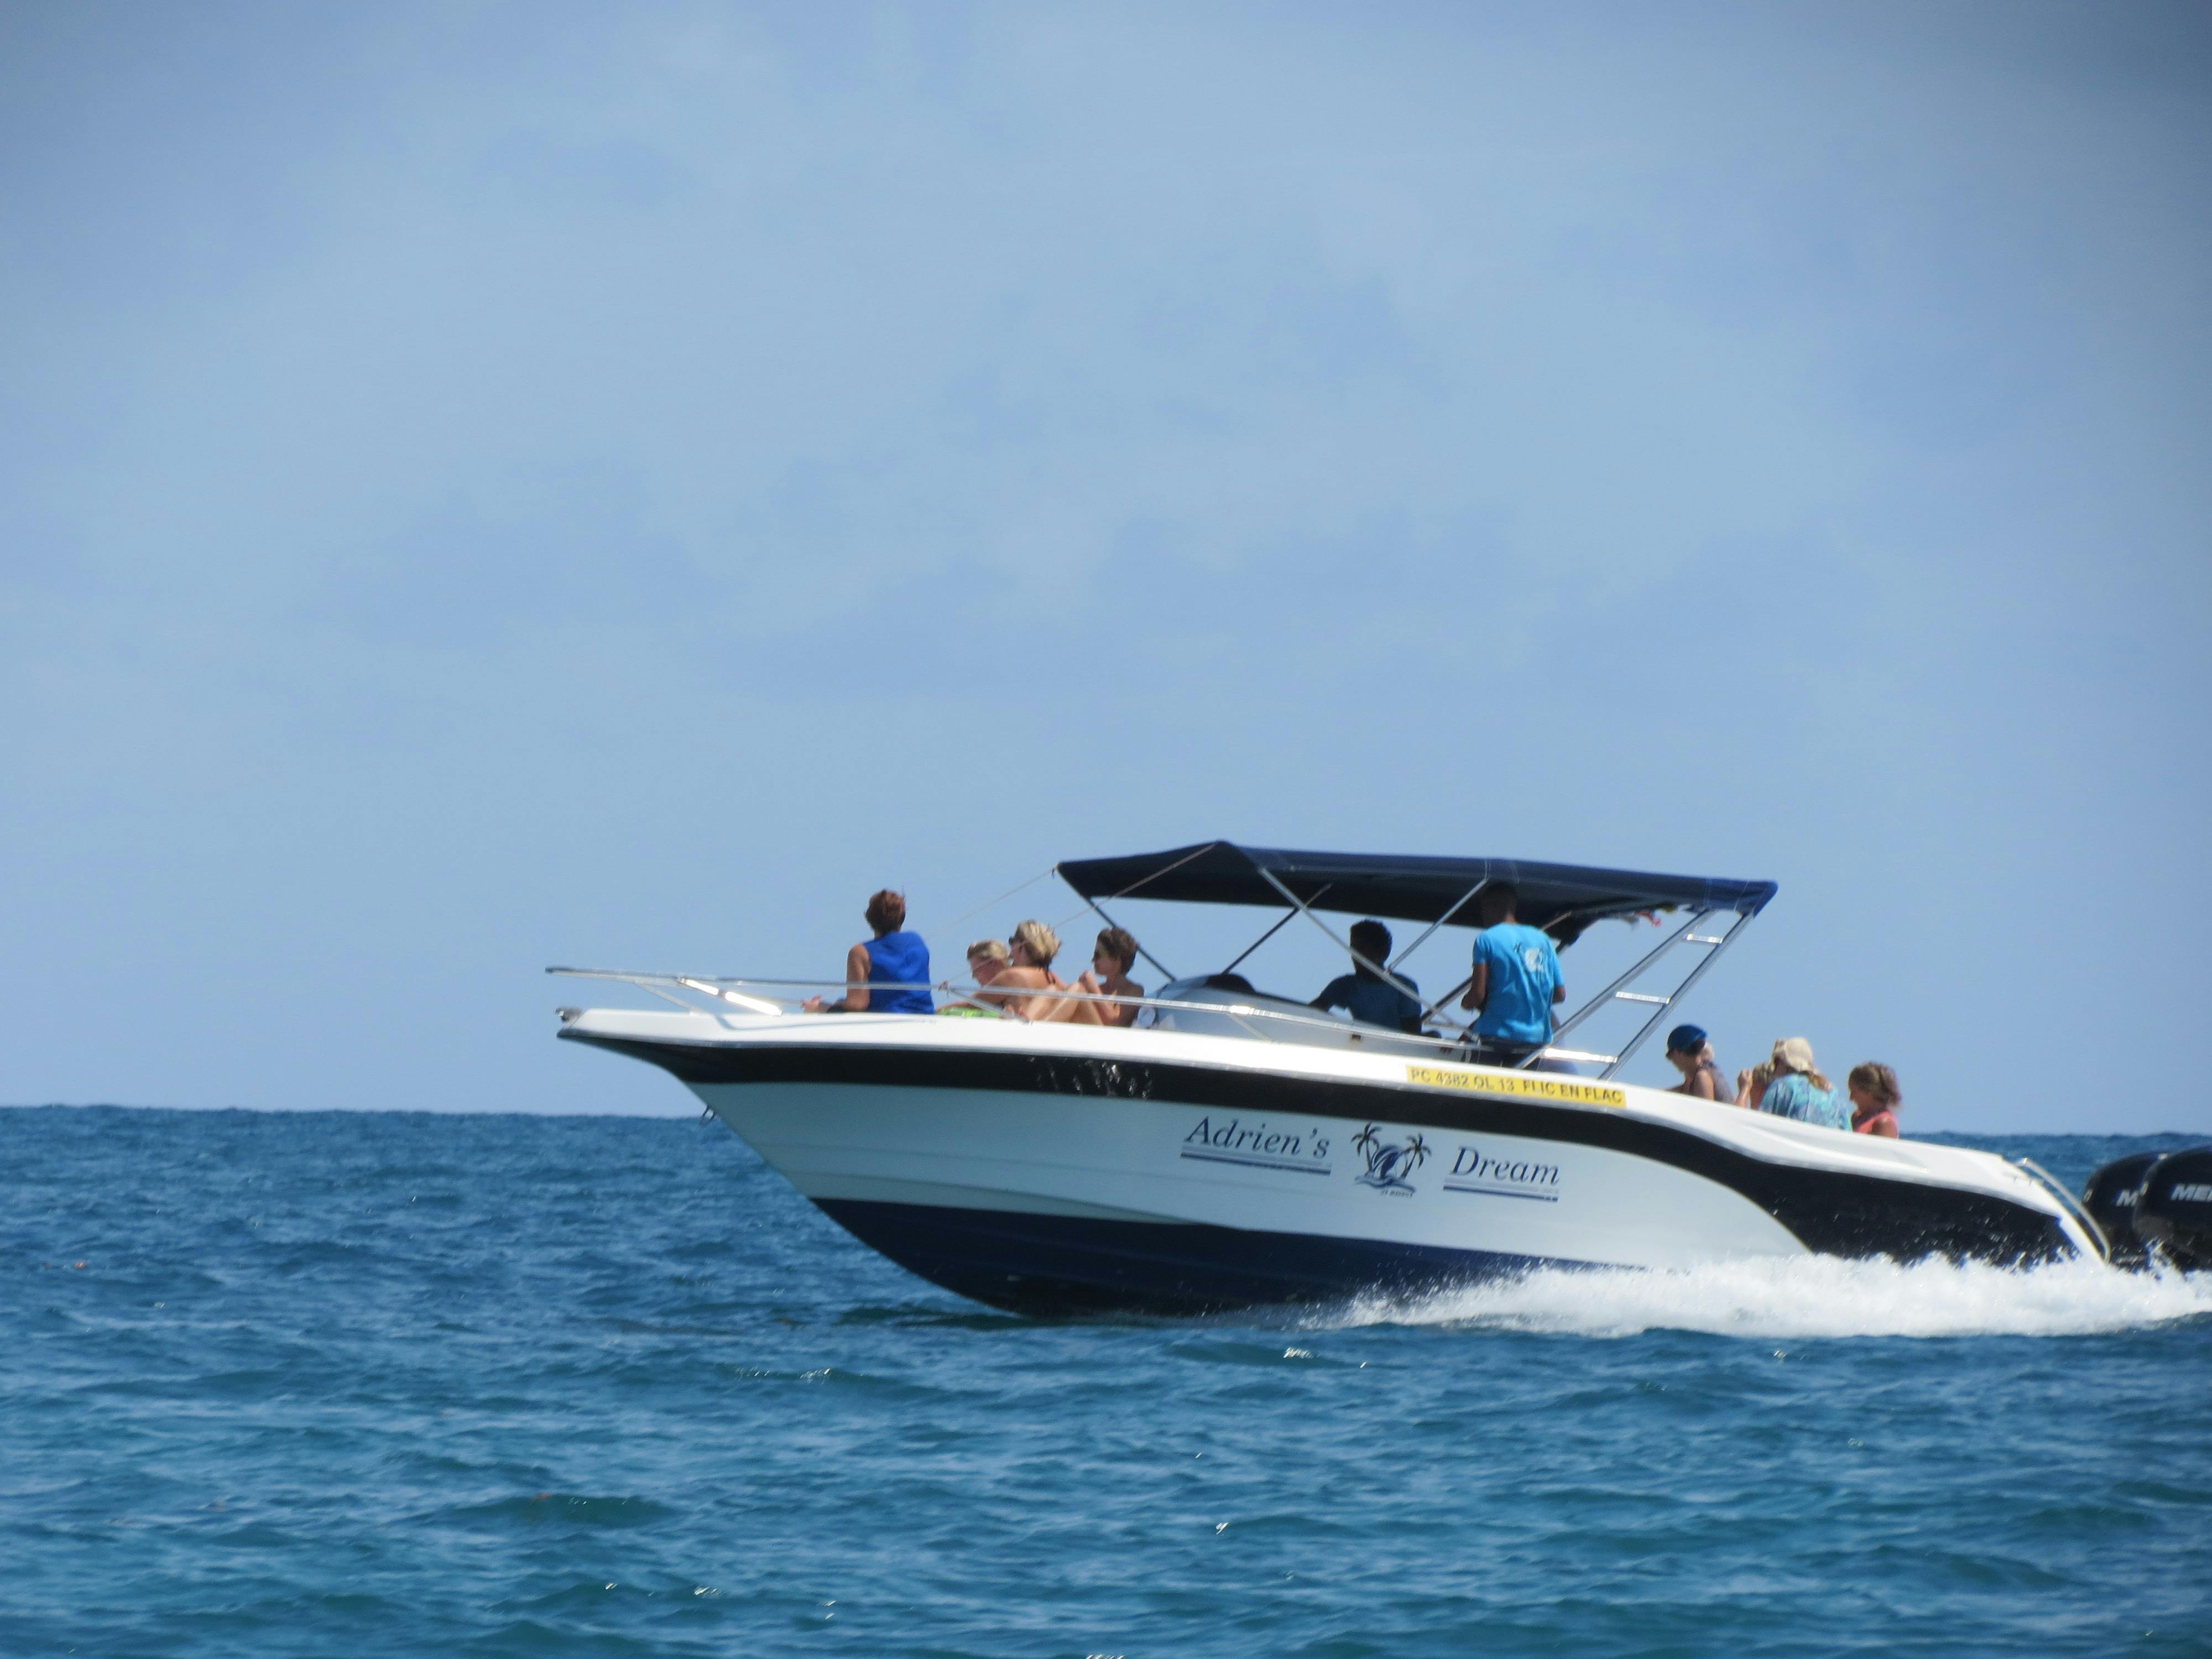 Private Schnellbootfahrt zur Beobachtung des Meereslebens auf Mauritius